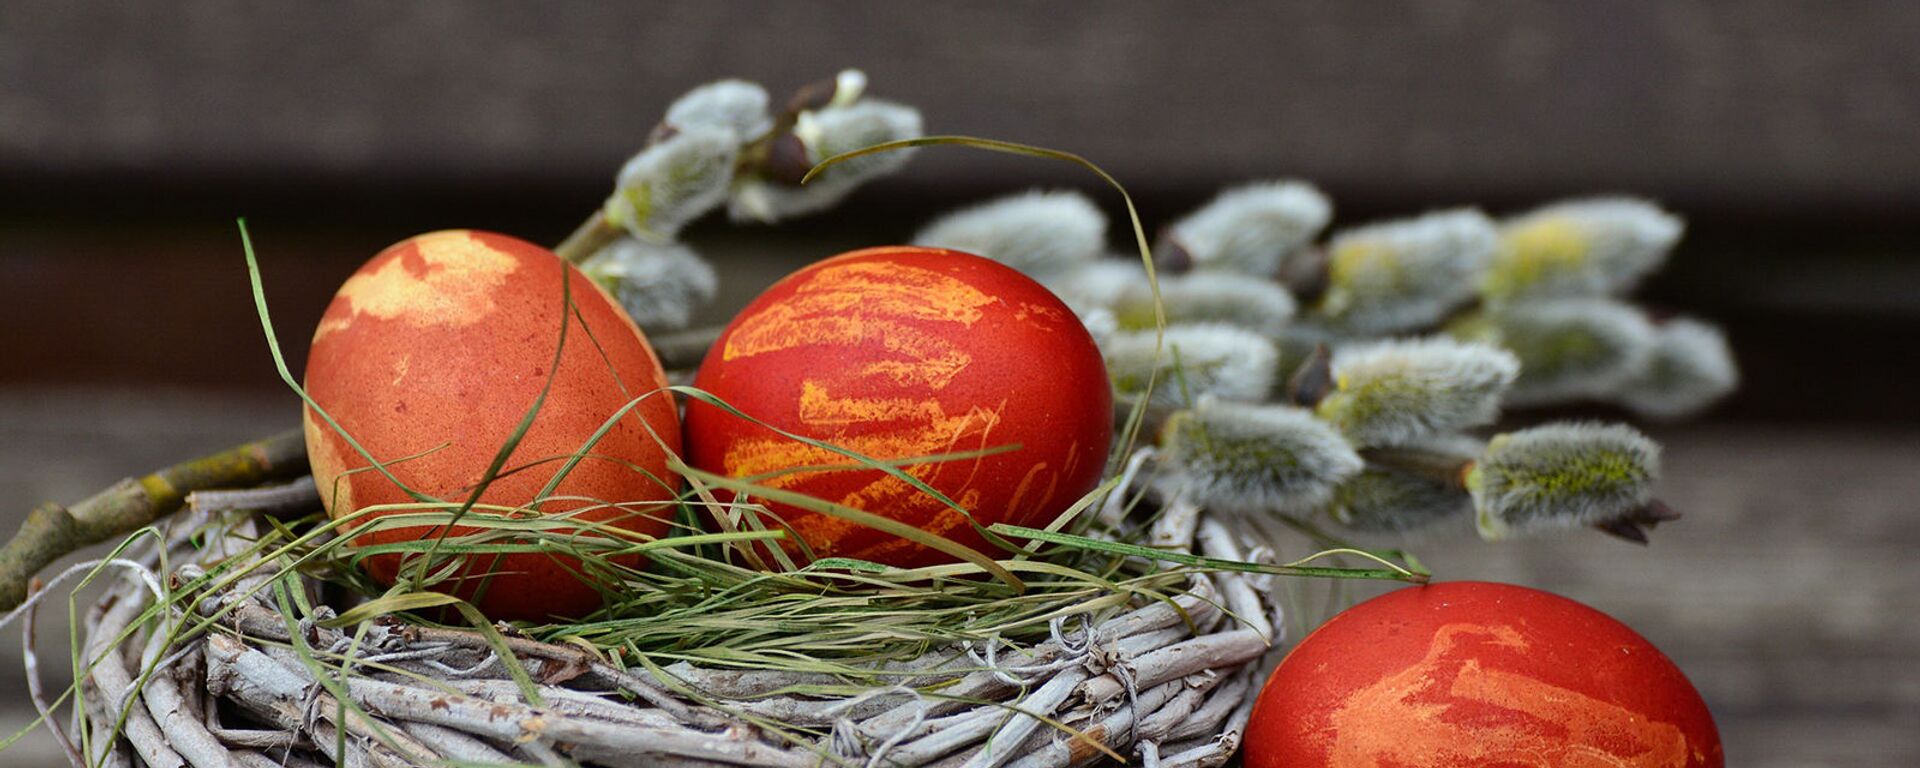 Пасхальные яйца - Sputnik Армения, 1920, 04.04.2021